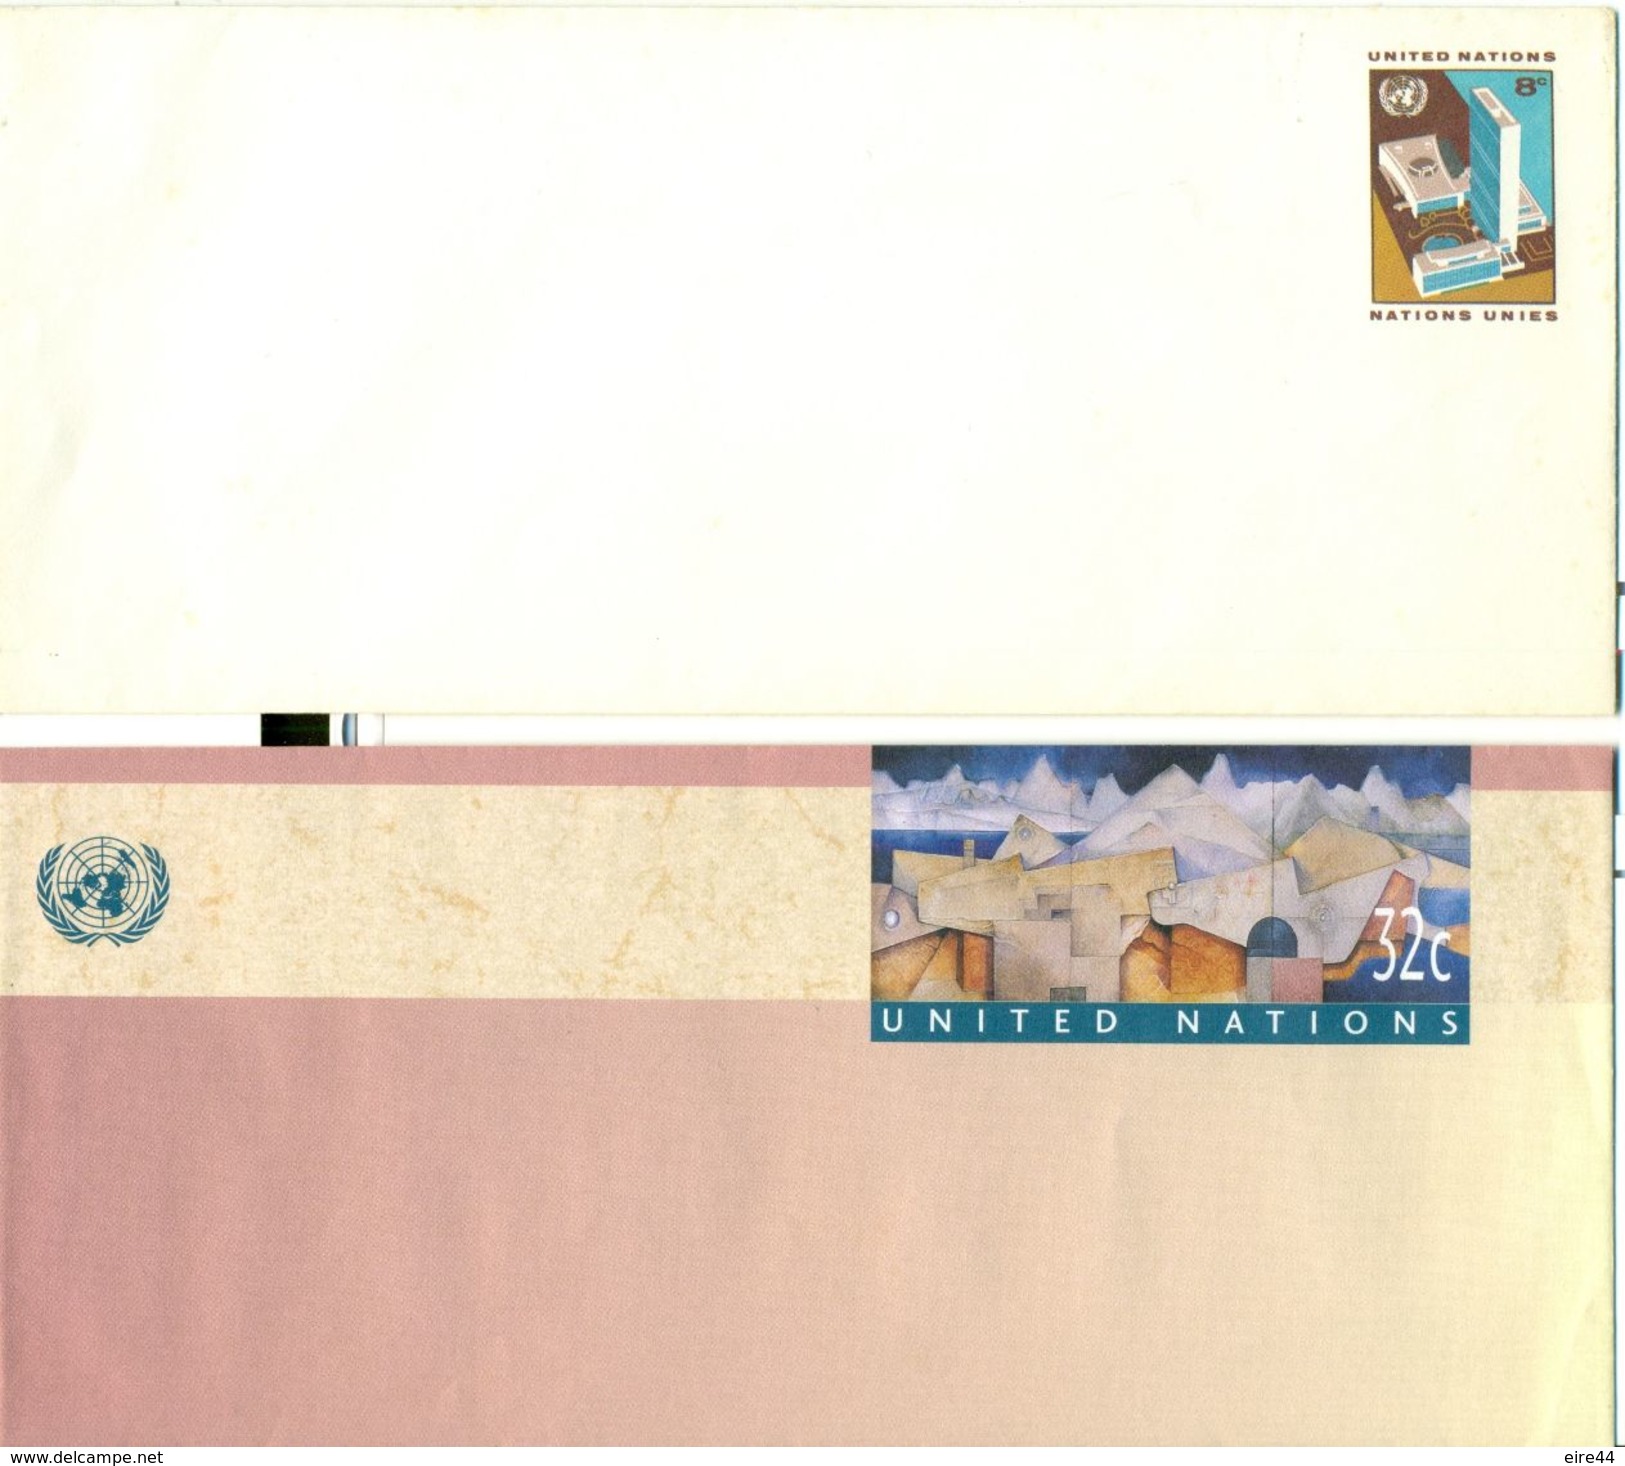 United Nations New York  7 Postal Stationery Mint - Luftpost